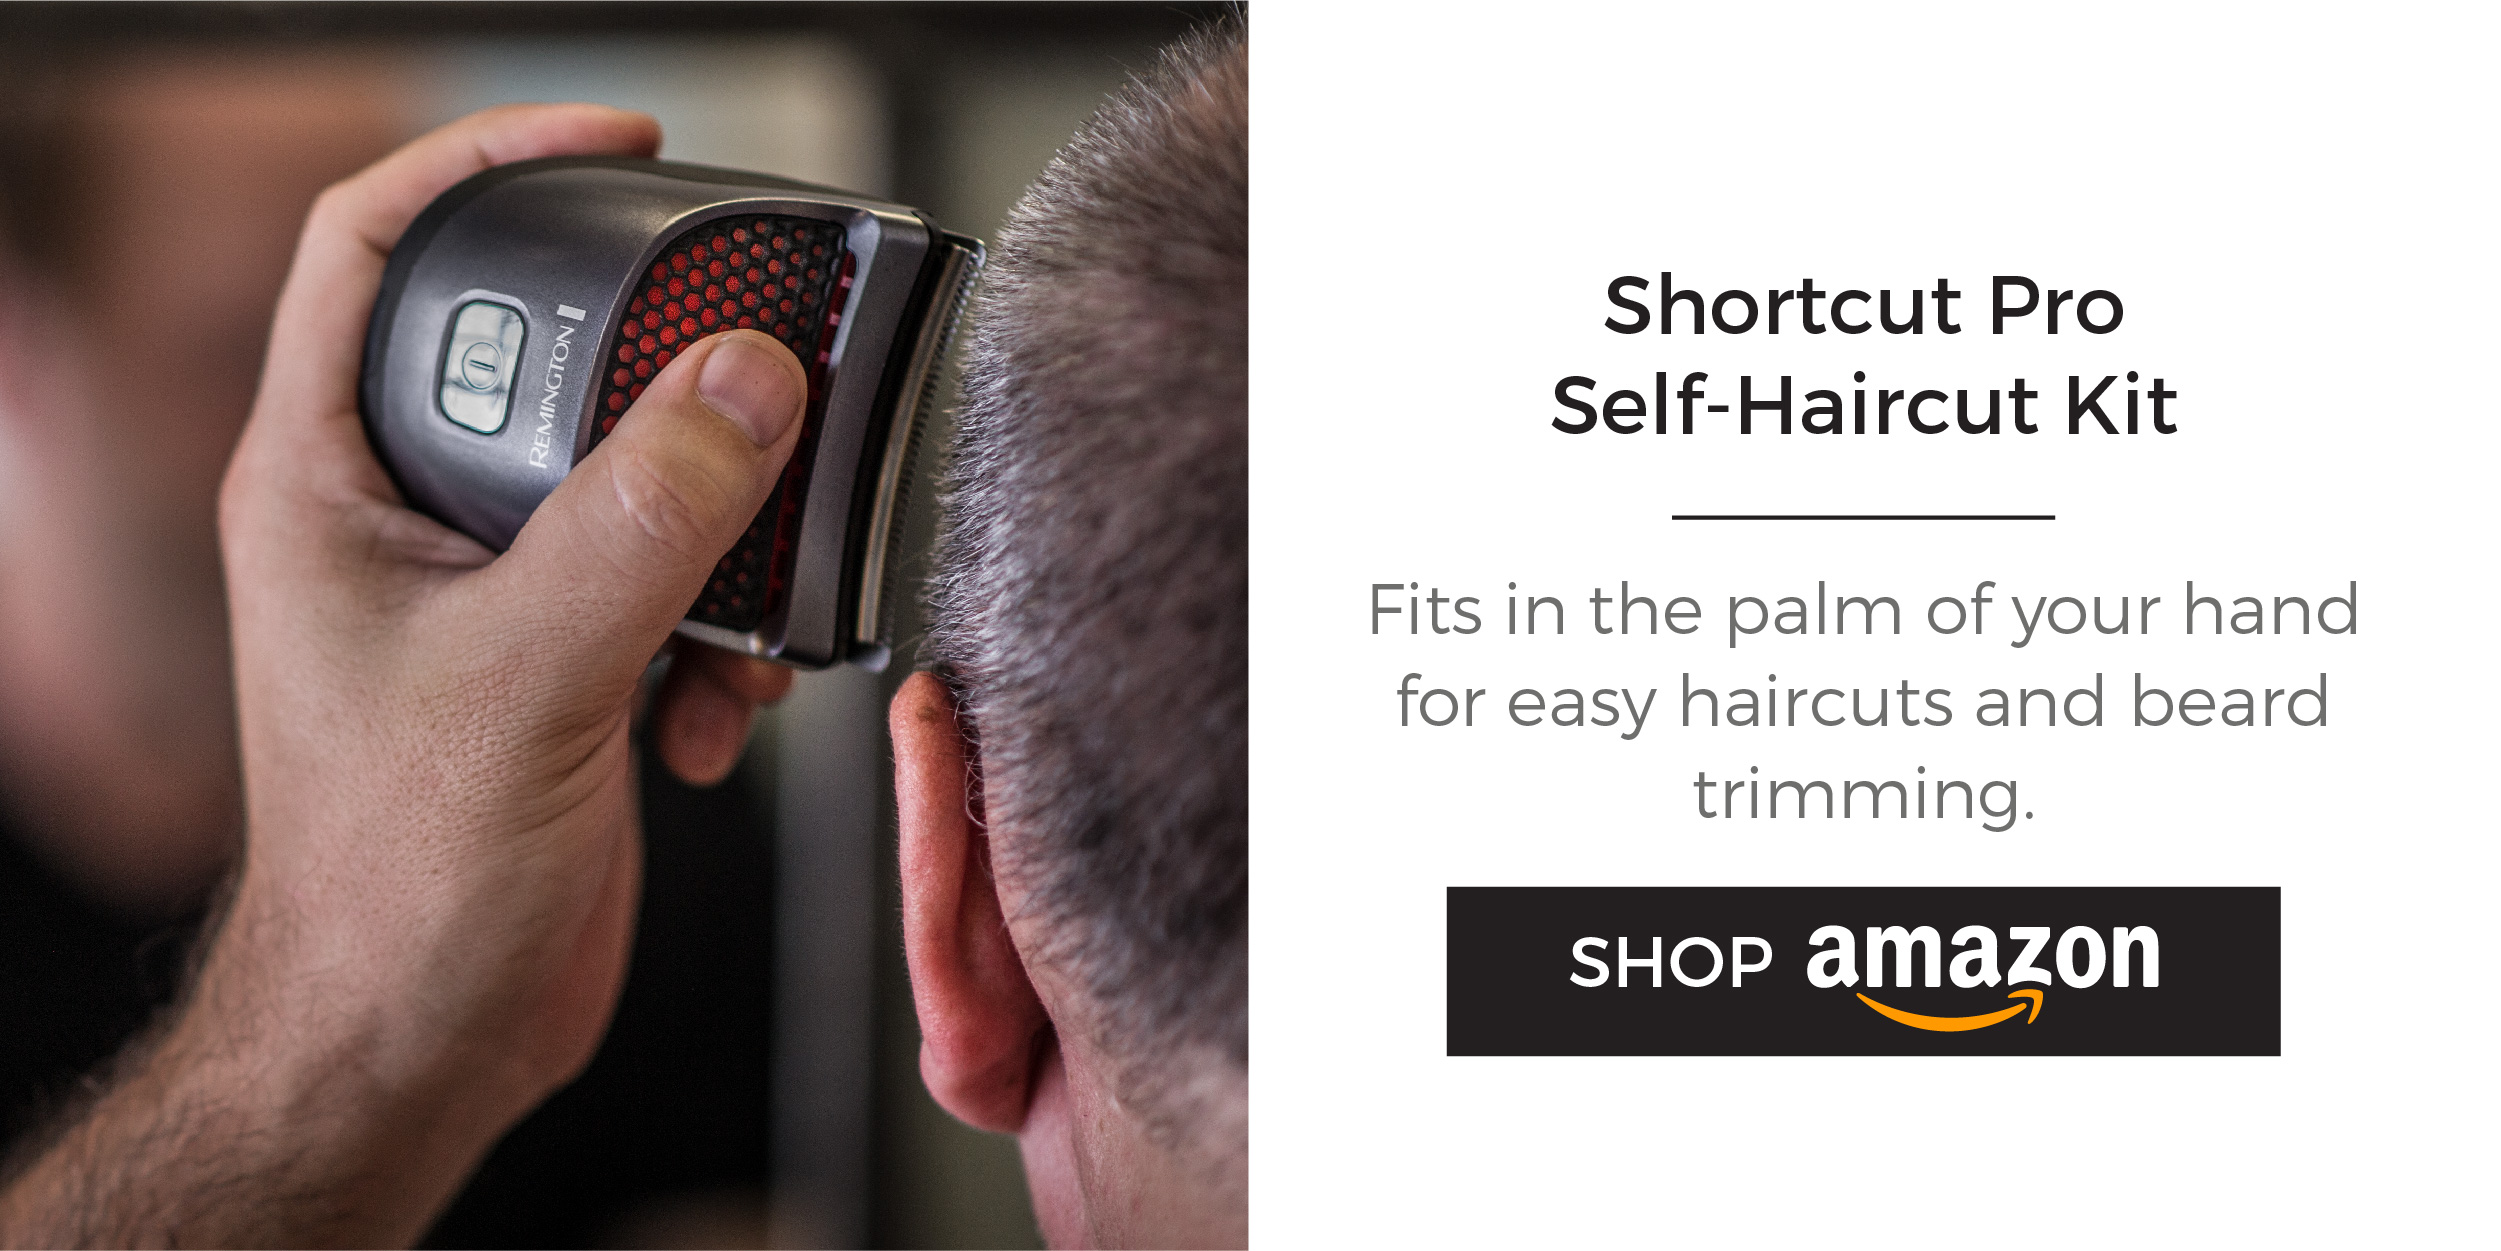 Shortcut Pro Self-Haircut Kit. Shop Now!